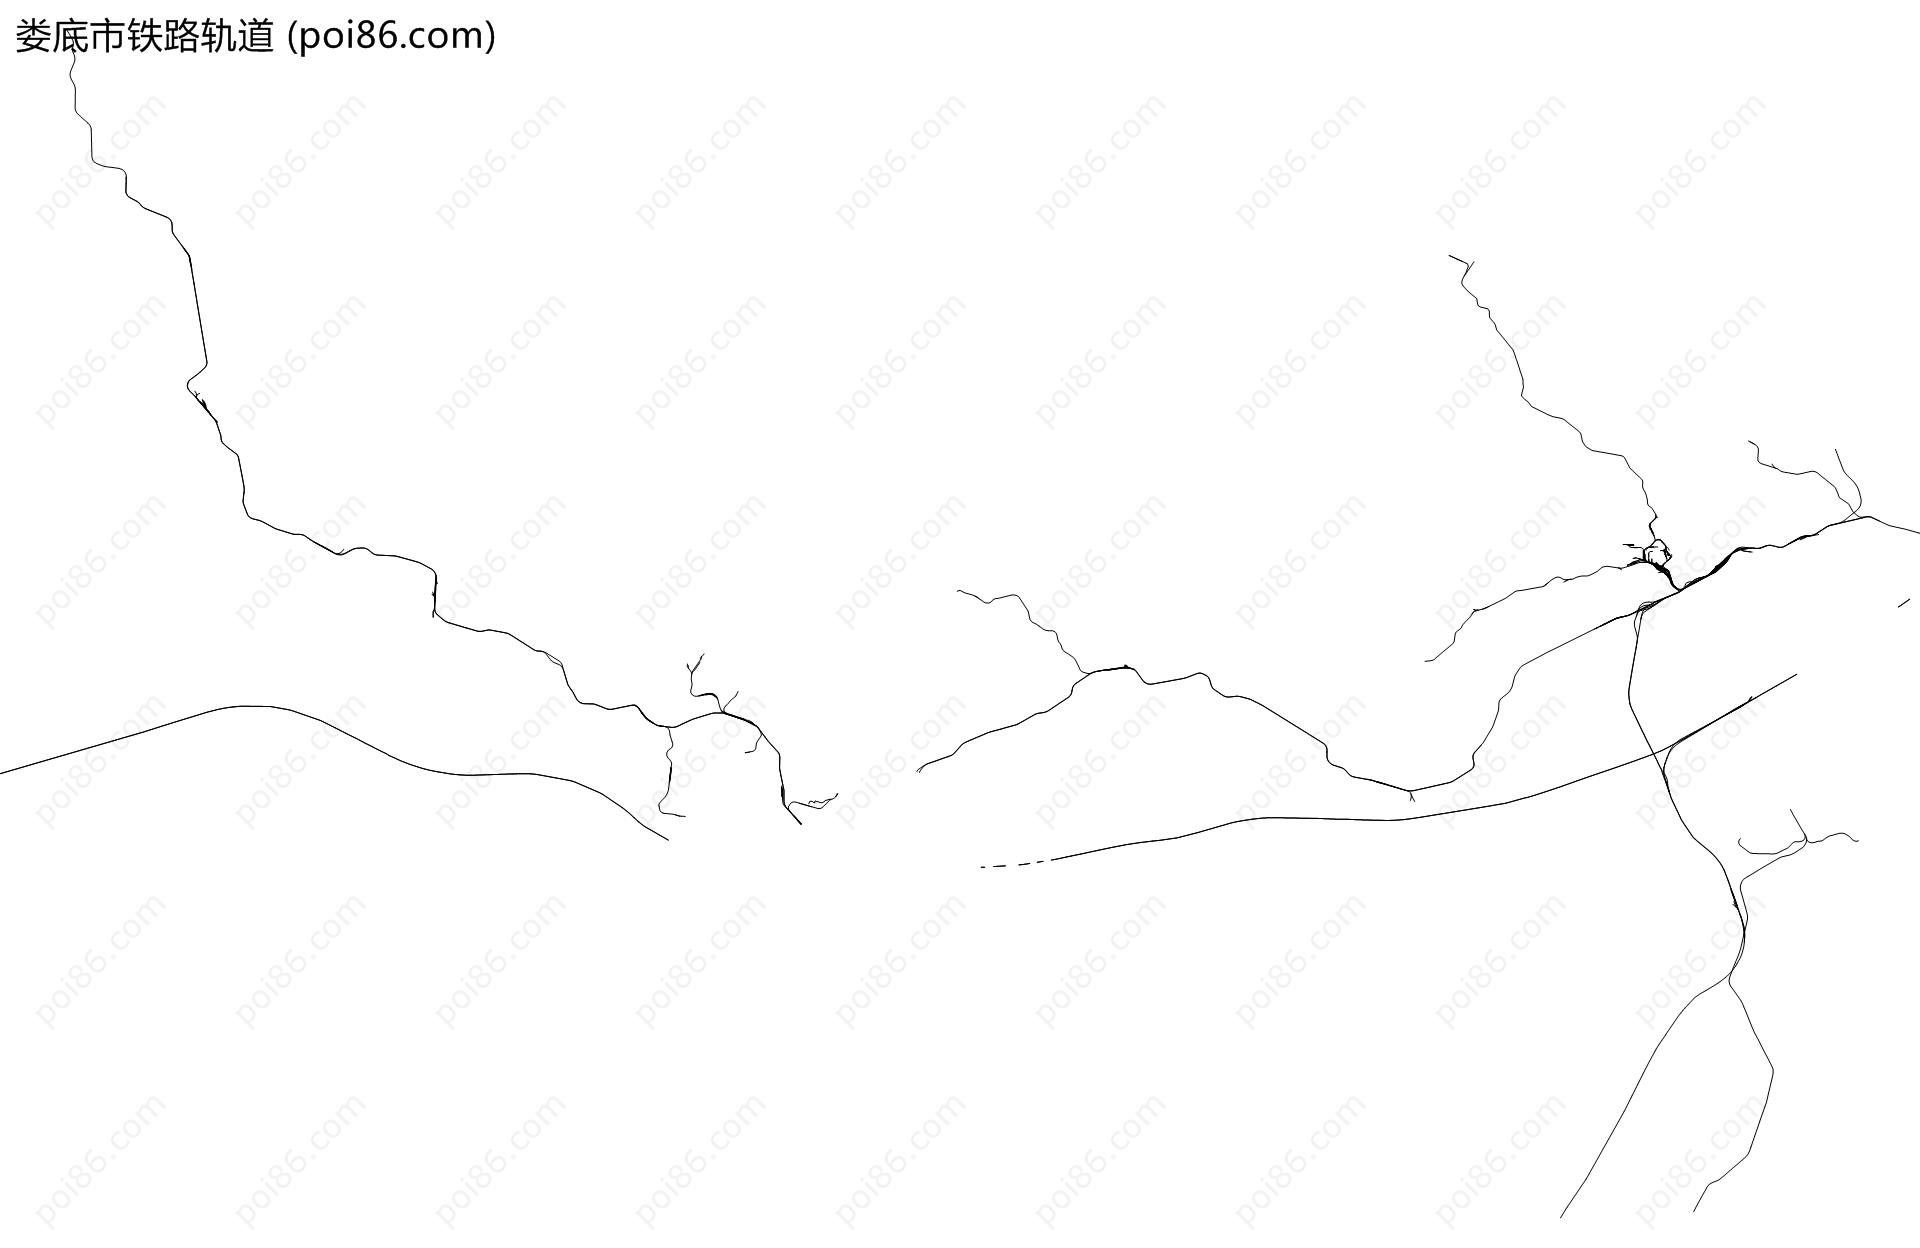 娄底市铁路轨道地图